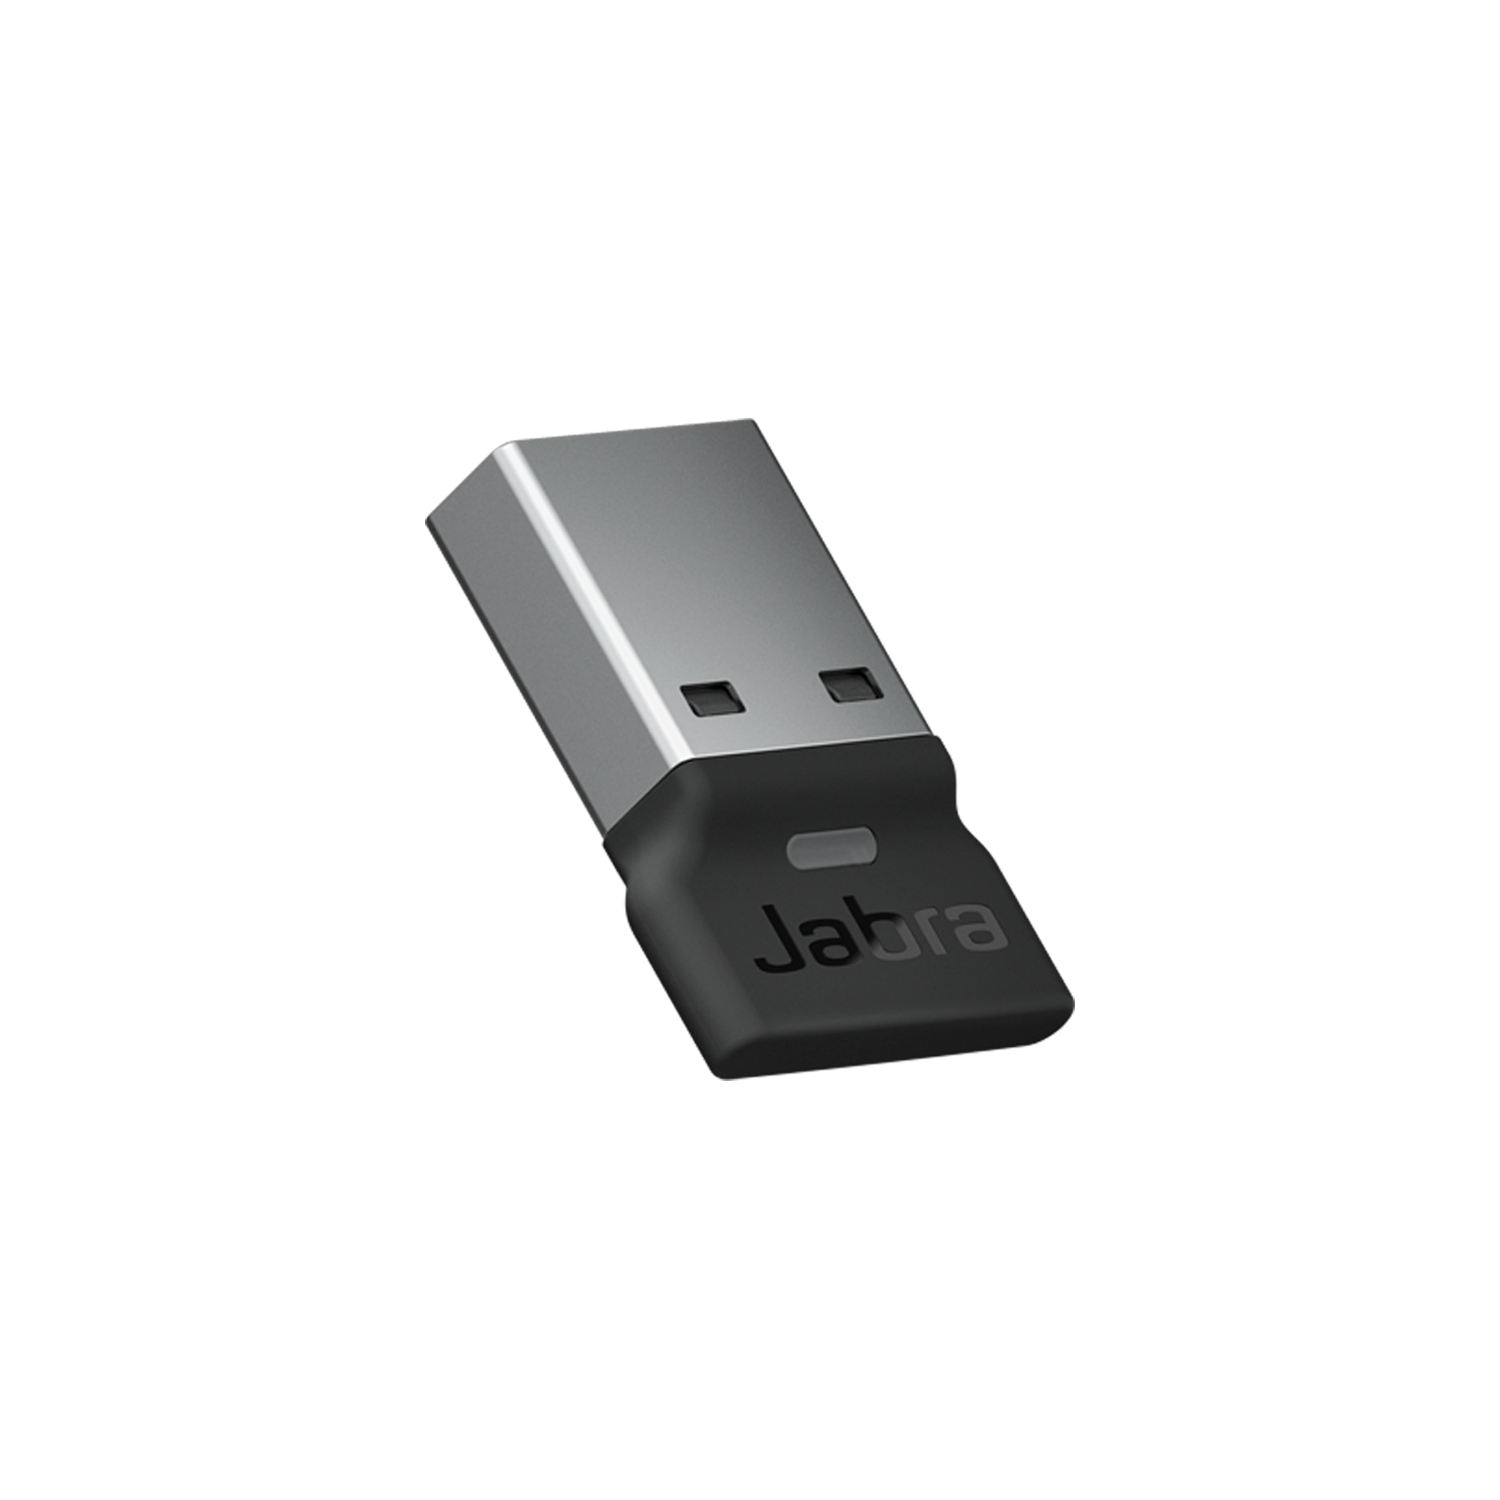  Jabra Link 380, Bộ chuyển đổi USB Bluetooth 